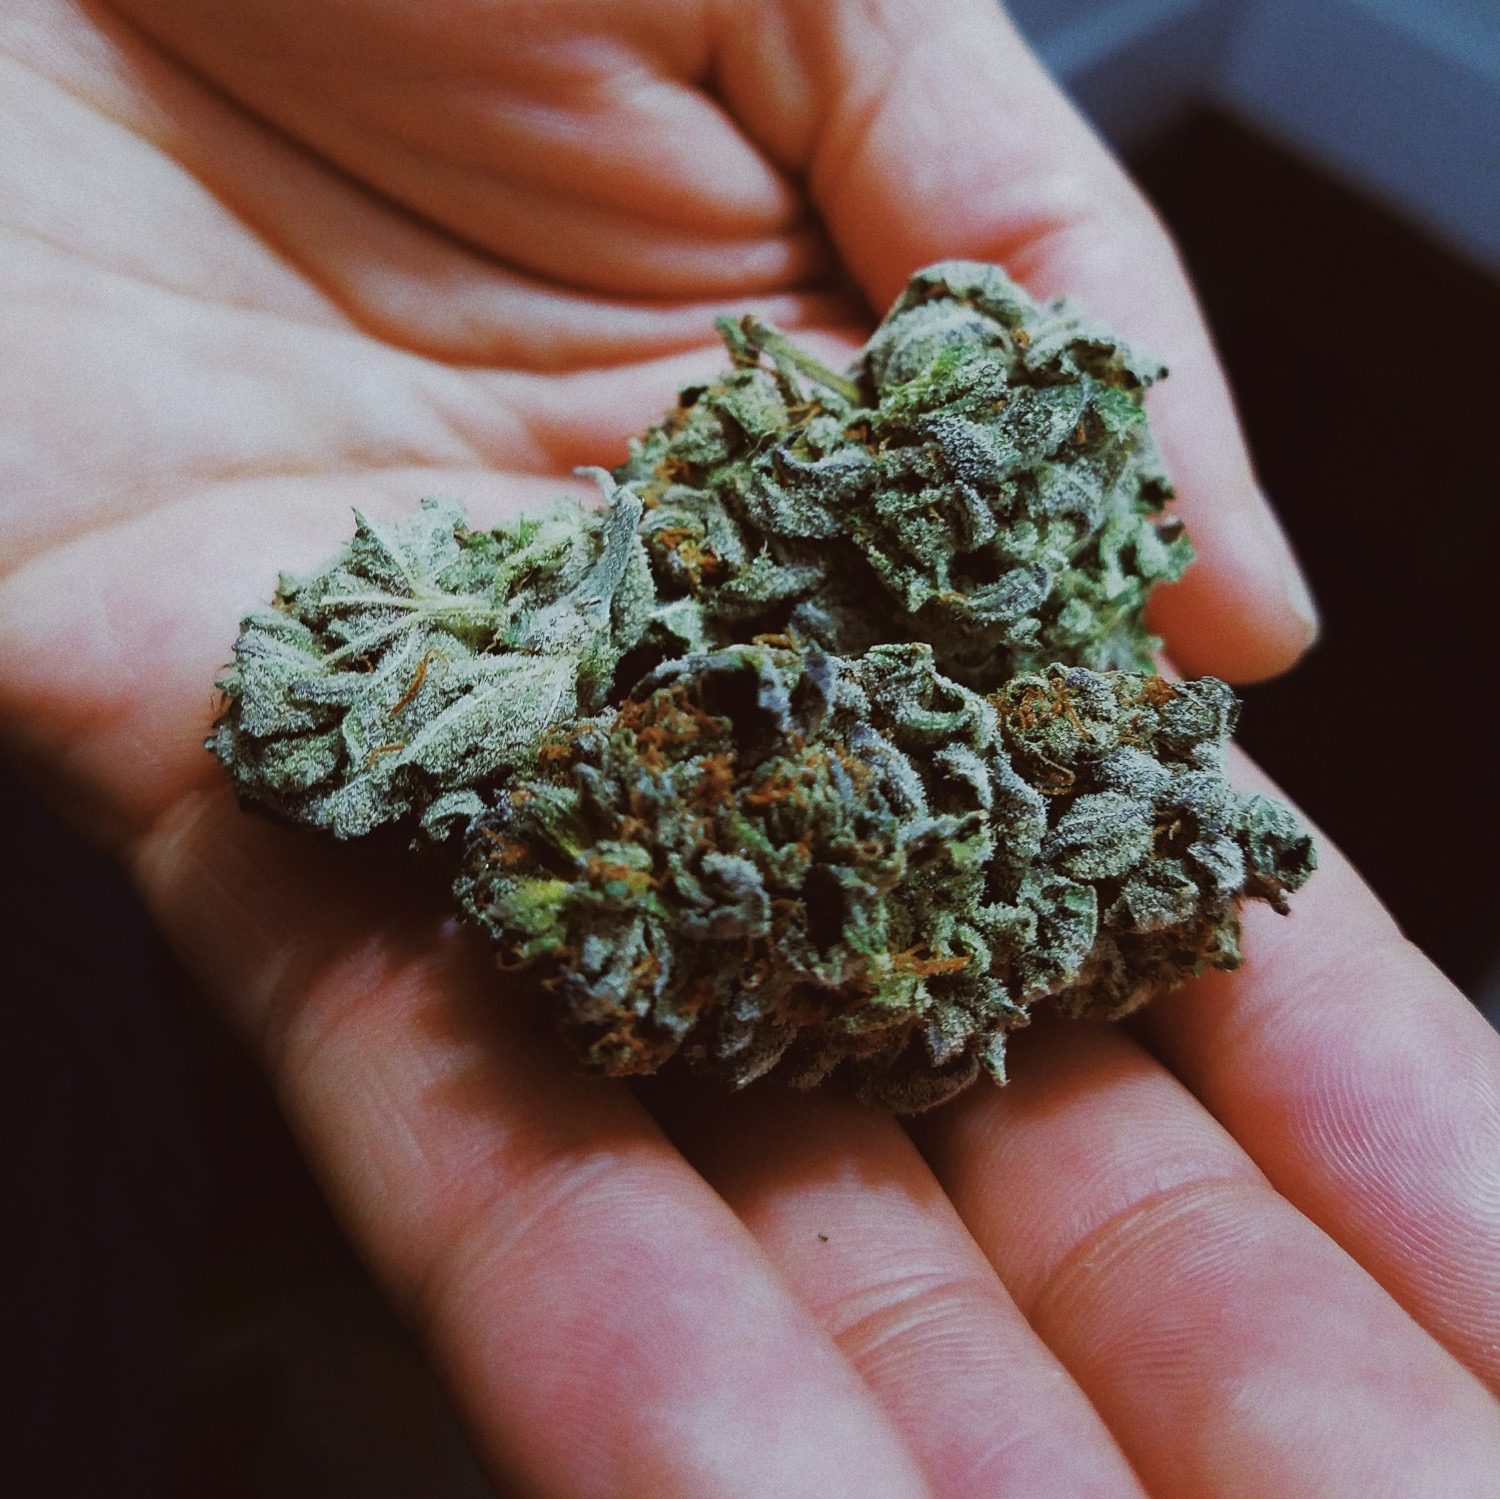 Marihuana, Cannabis, Ganja - was ist Weed? Was ist Marihuana?